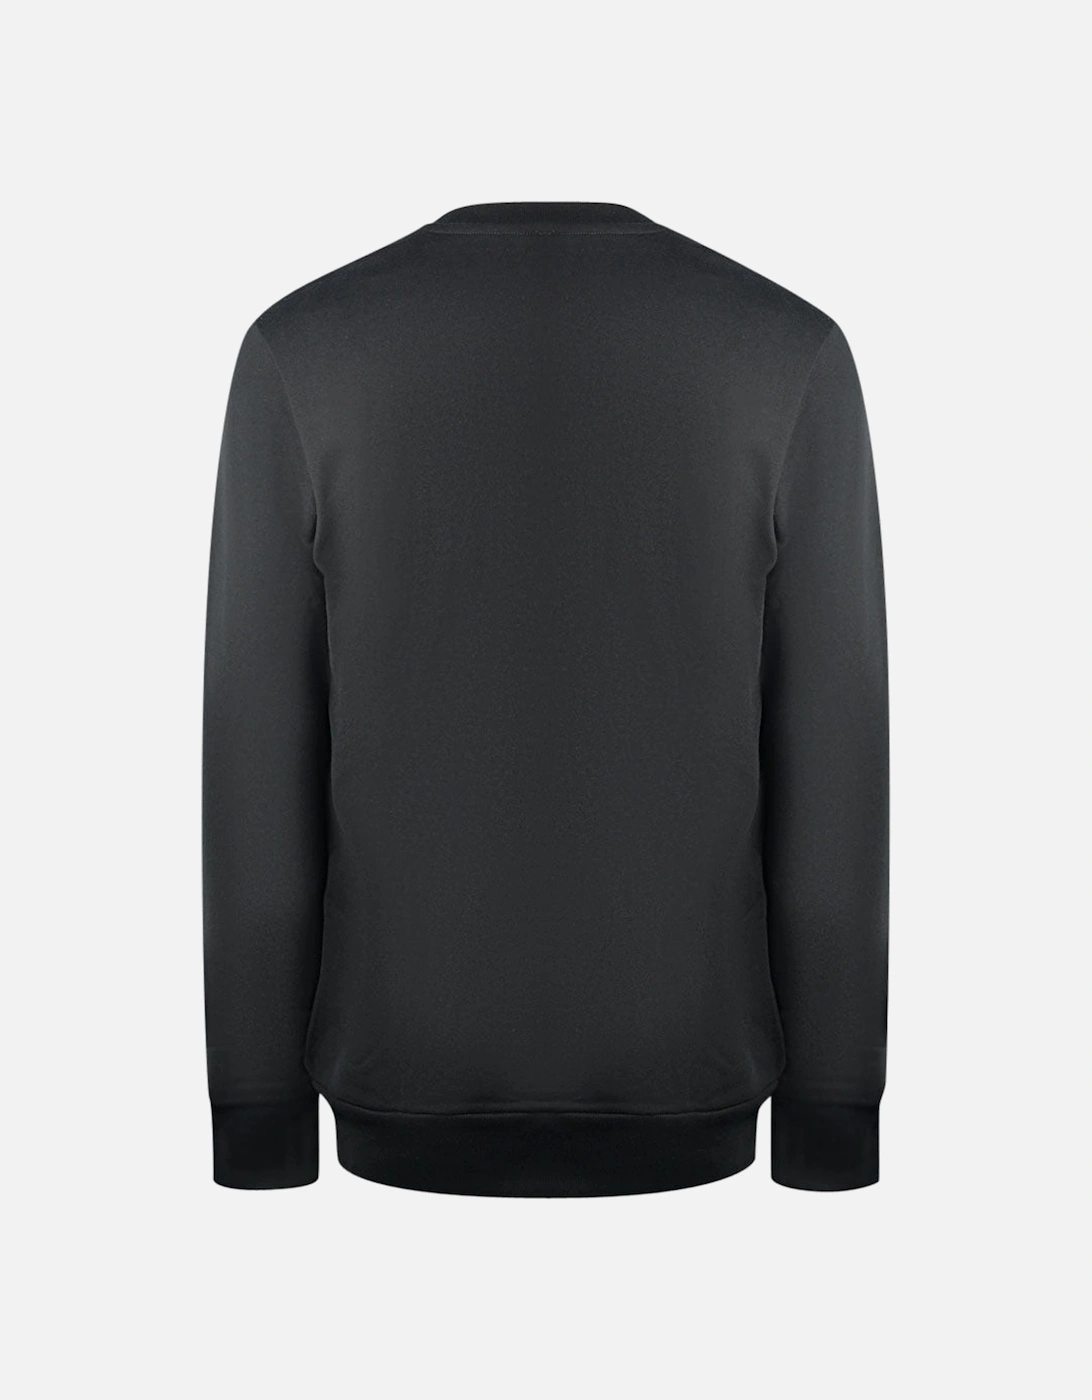 S-GIR-B5 Black Sweatshirt